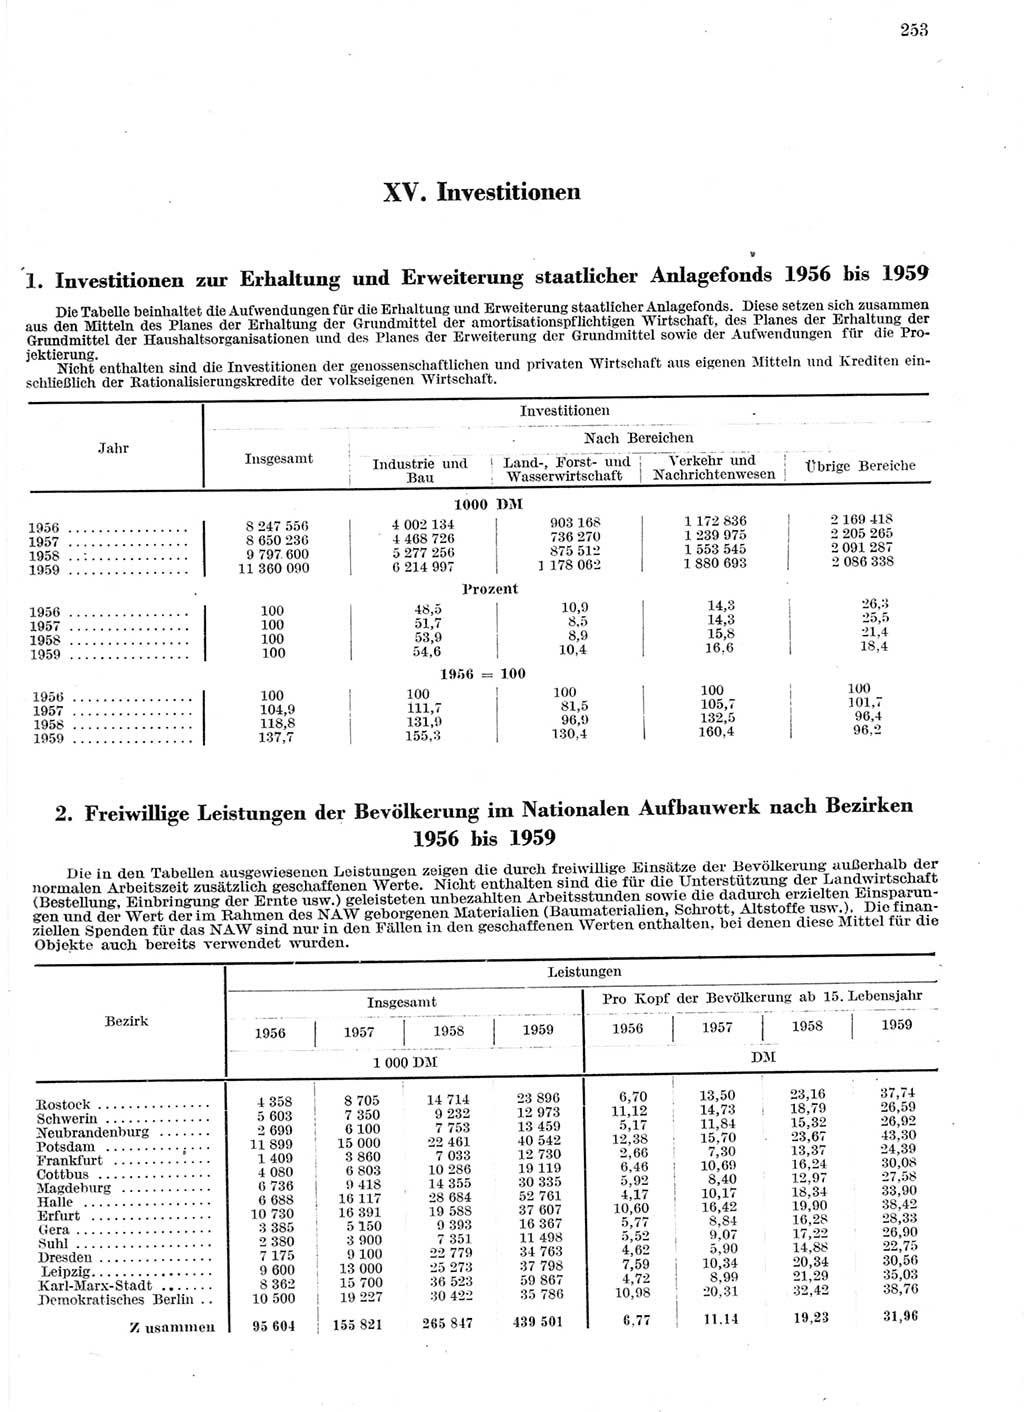 Statistisches Jahrbuch der Deutschen Demokratischen Republik (DDR) 1959, Seite 253 (Stat. Jb. DDR 1959, S. 253)